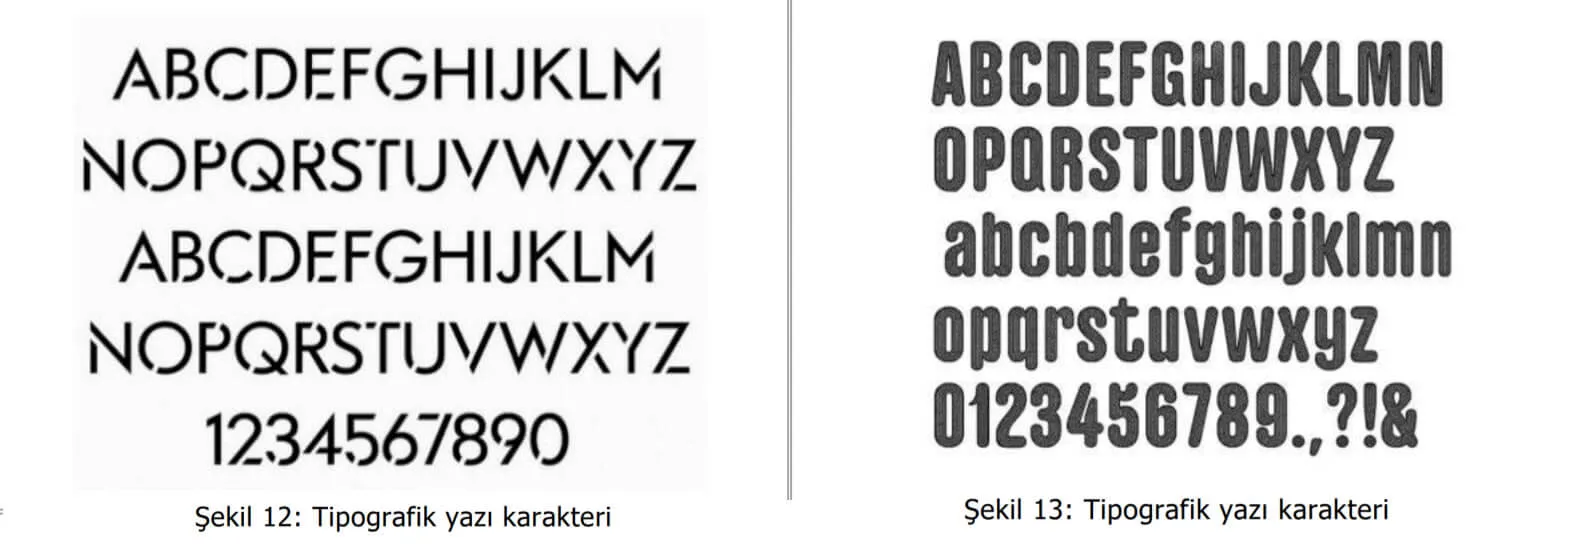 tipografik yazı karakter örnekleri-manisa web tasarım